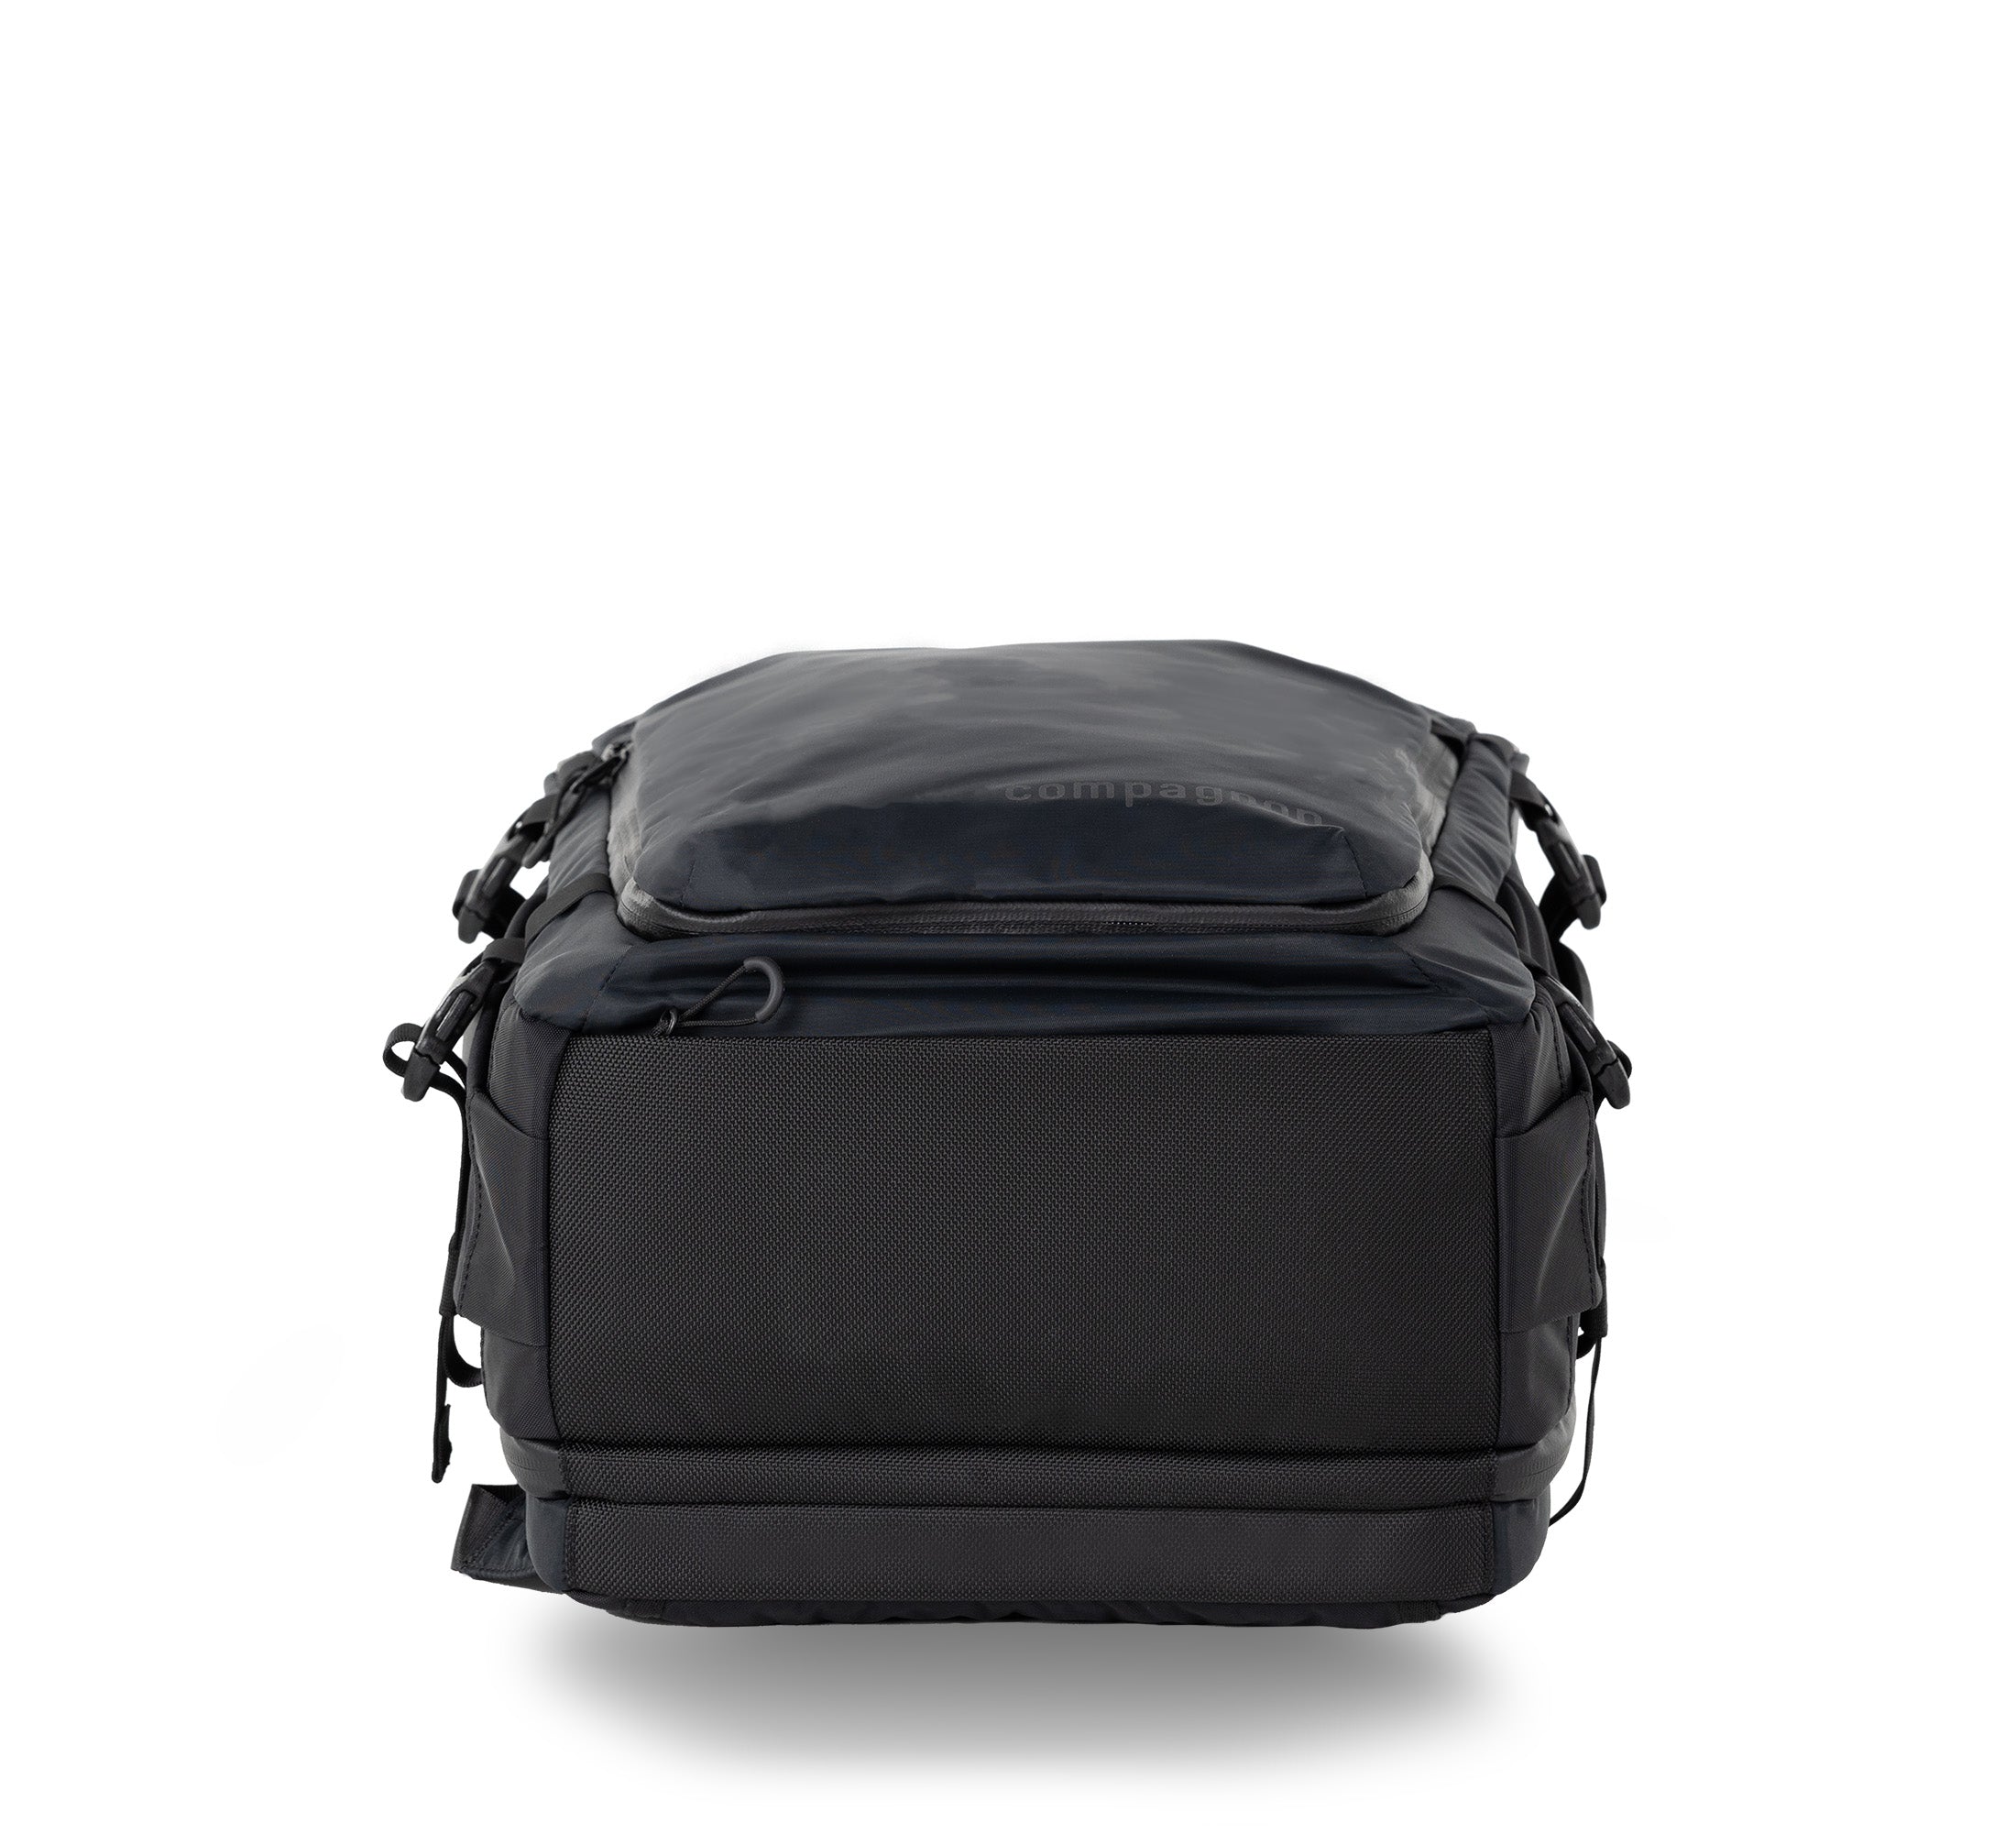 Adapt backpack 25L - Kit complet